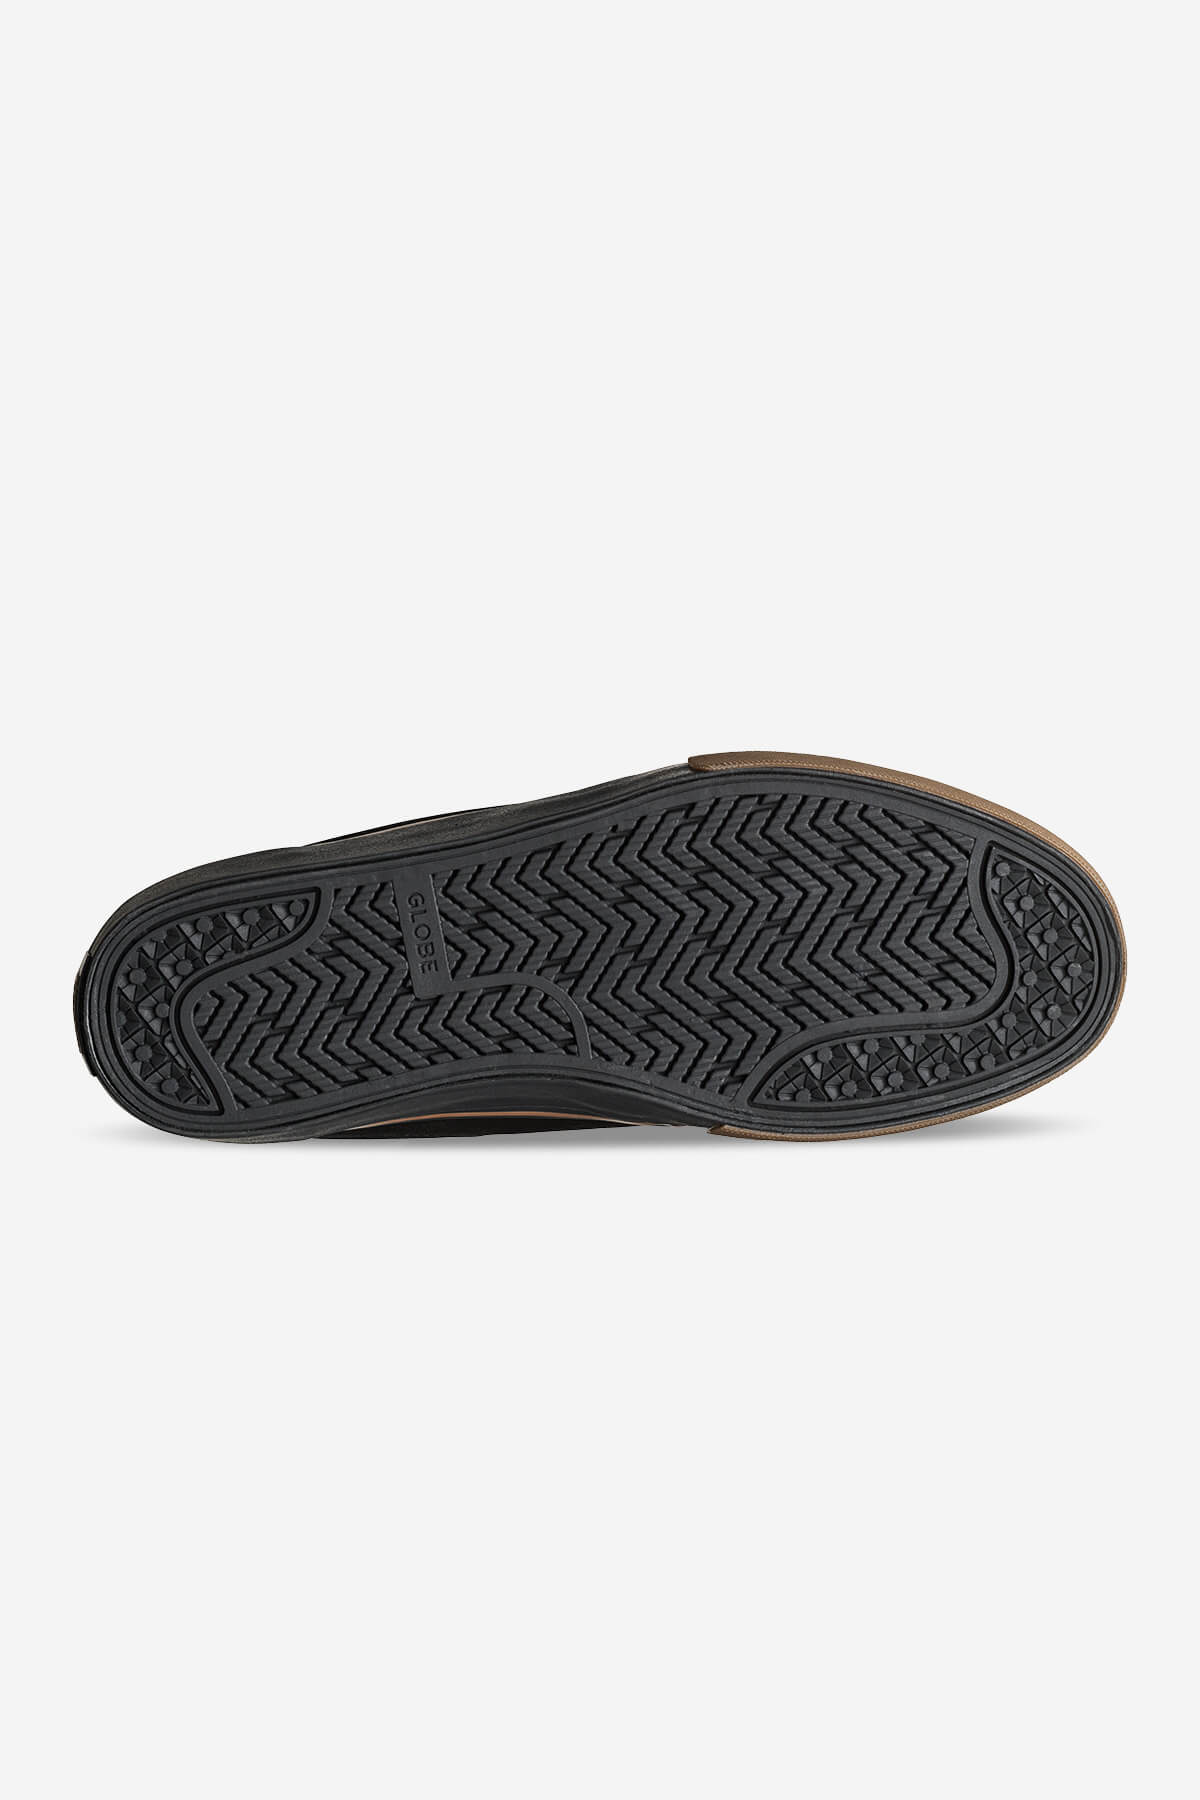 Globe - Mahalo - Negro/Goma - skateboard Zapatos